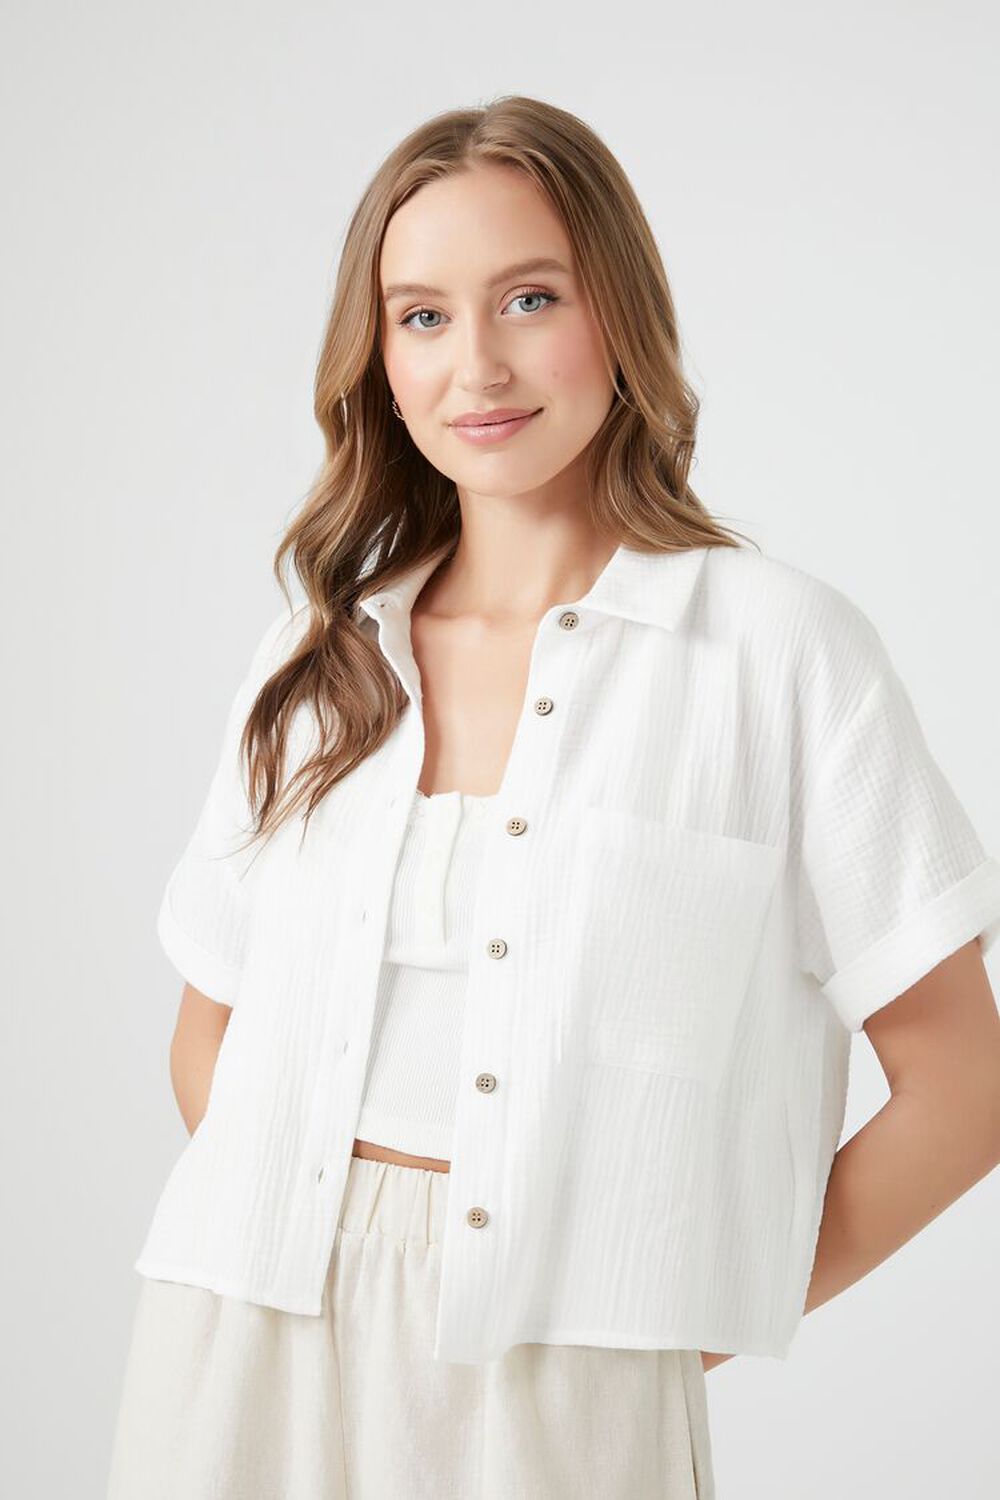 WHITE Textured Boxy Short-Sleeve Shirt, image 1